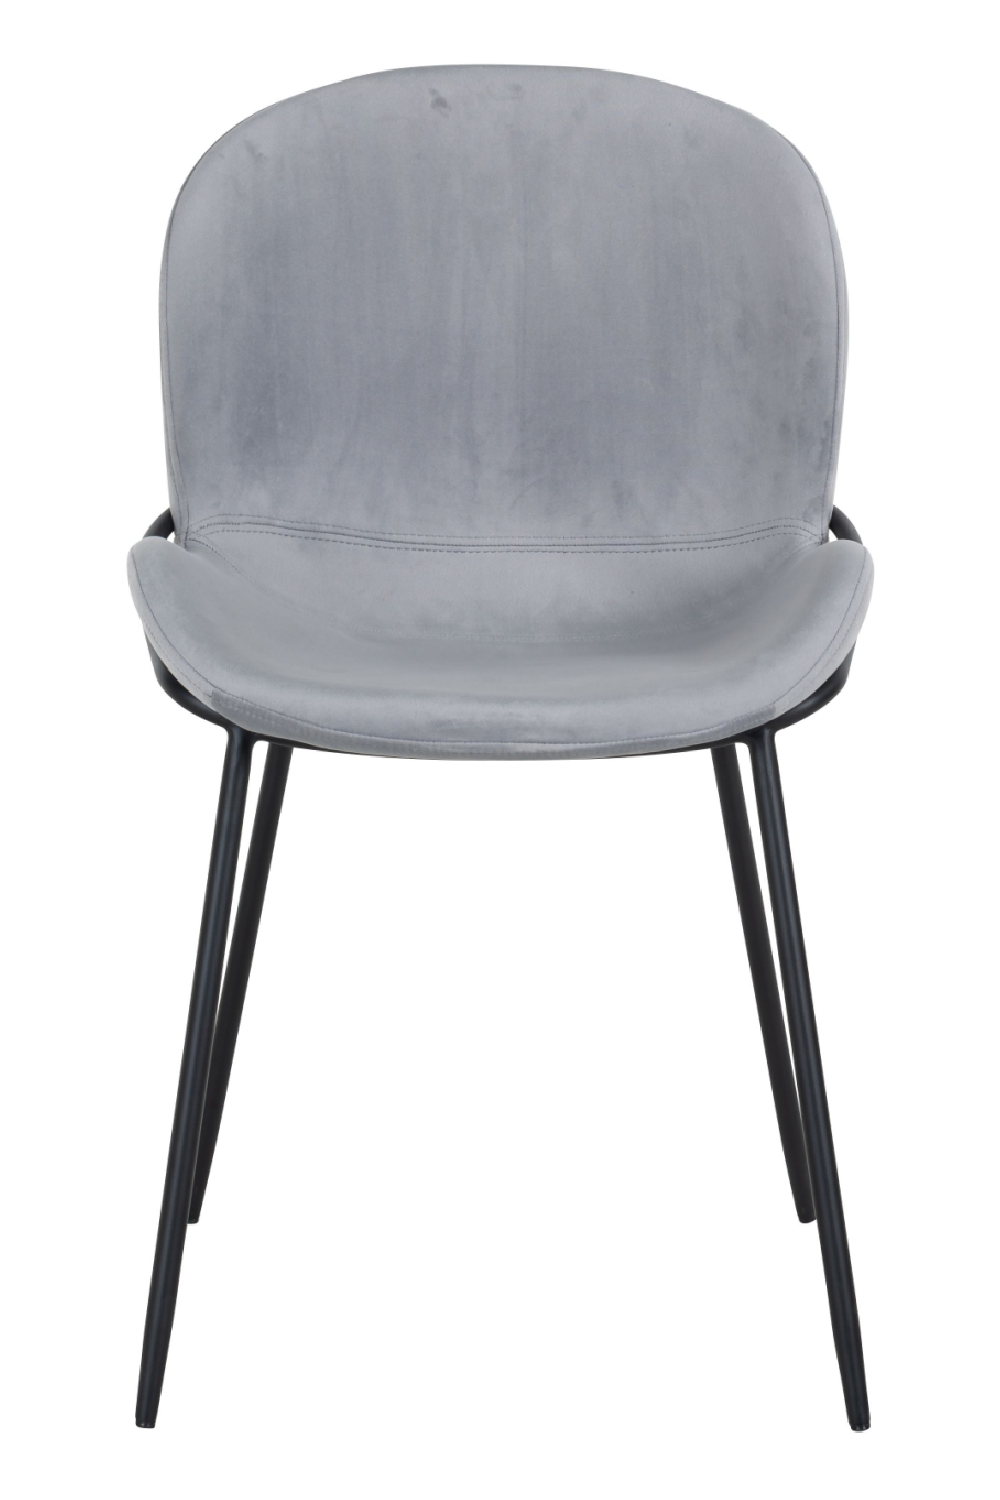 Steel Velvet Black Base Dining Chair OROA Ella OROA - OROA